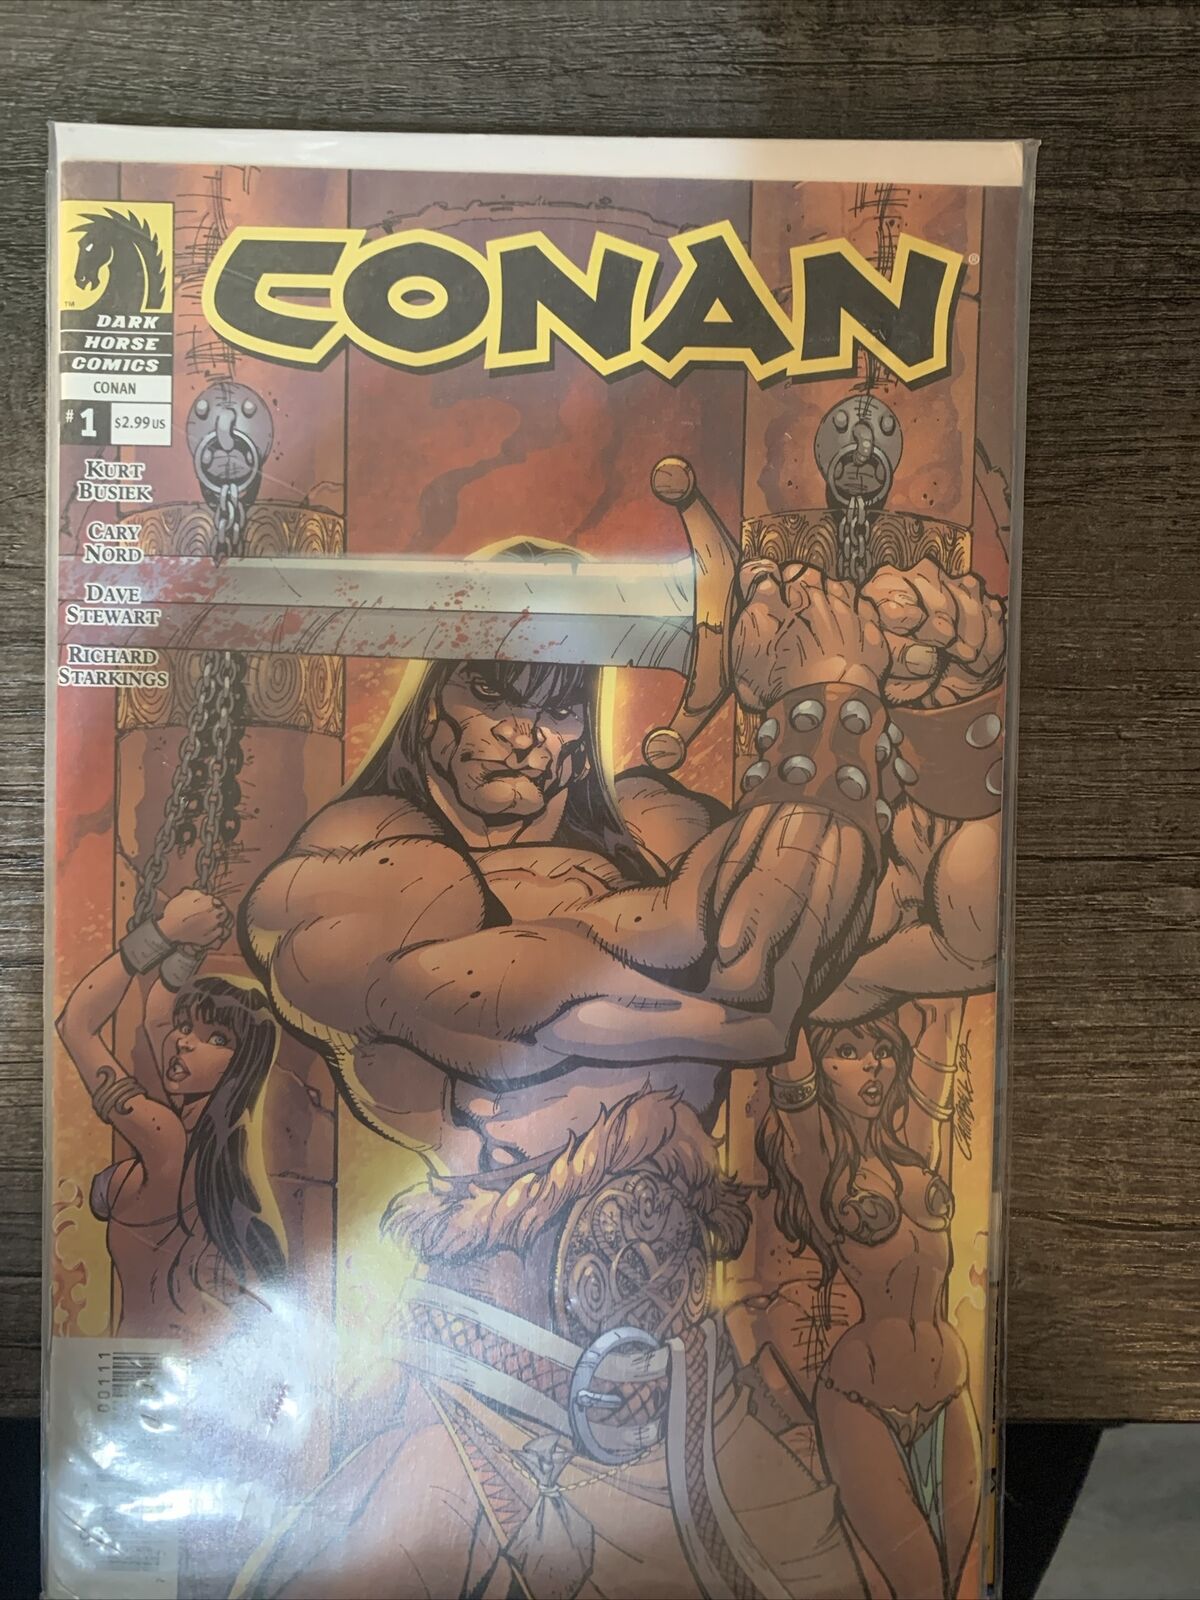 CONAN #1 (Dark Horse Comics 2004) -- J Scott Campbell Cover